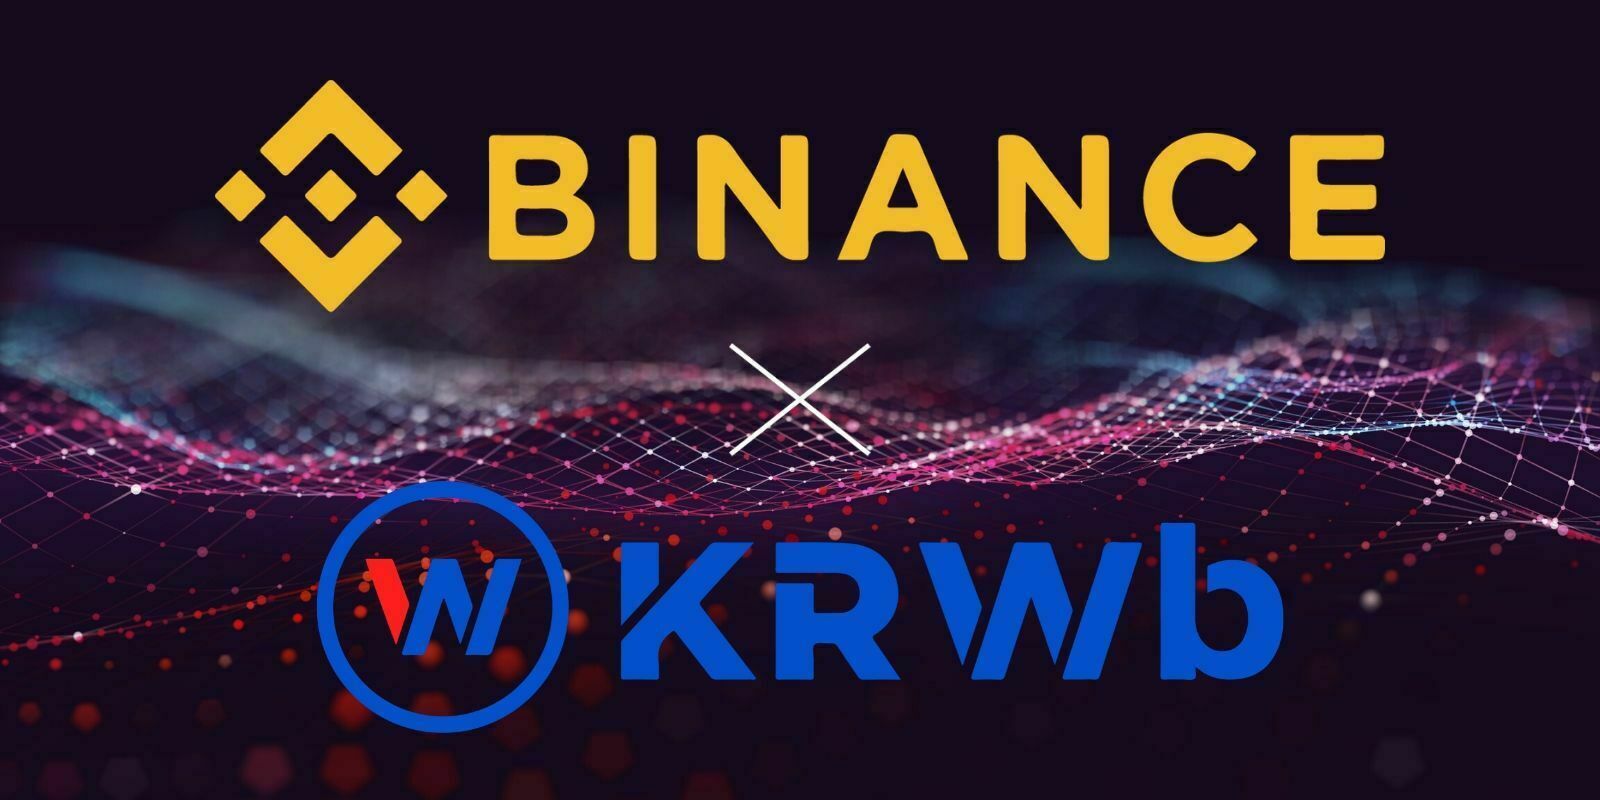 Binance collabore avec BxB, la startup émettrice du KRWb, un stablecoin indexé au won sud-coréen